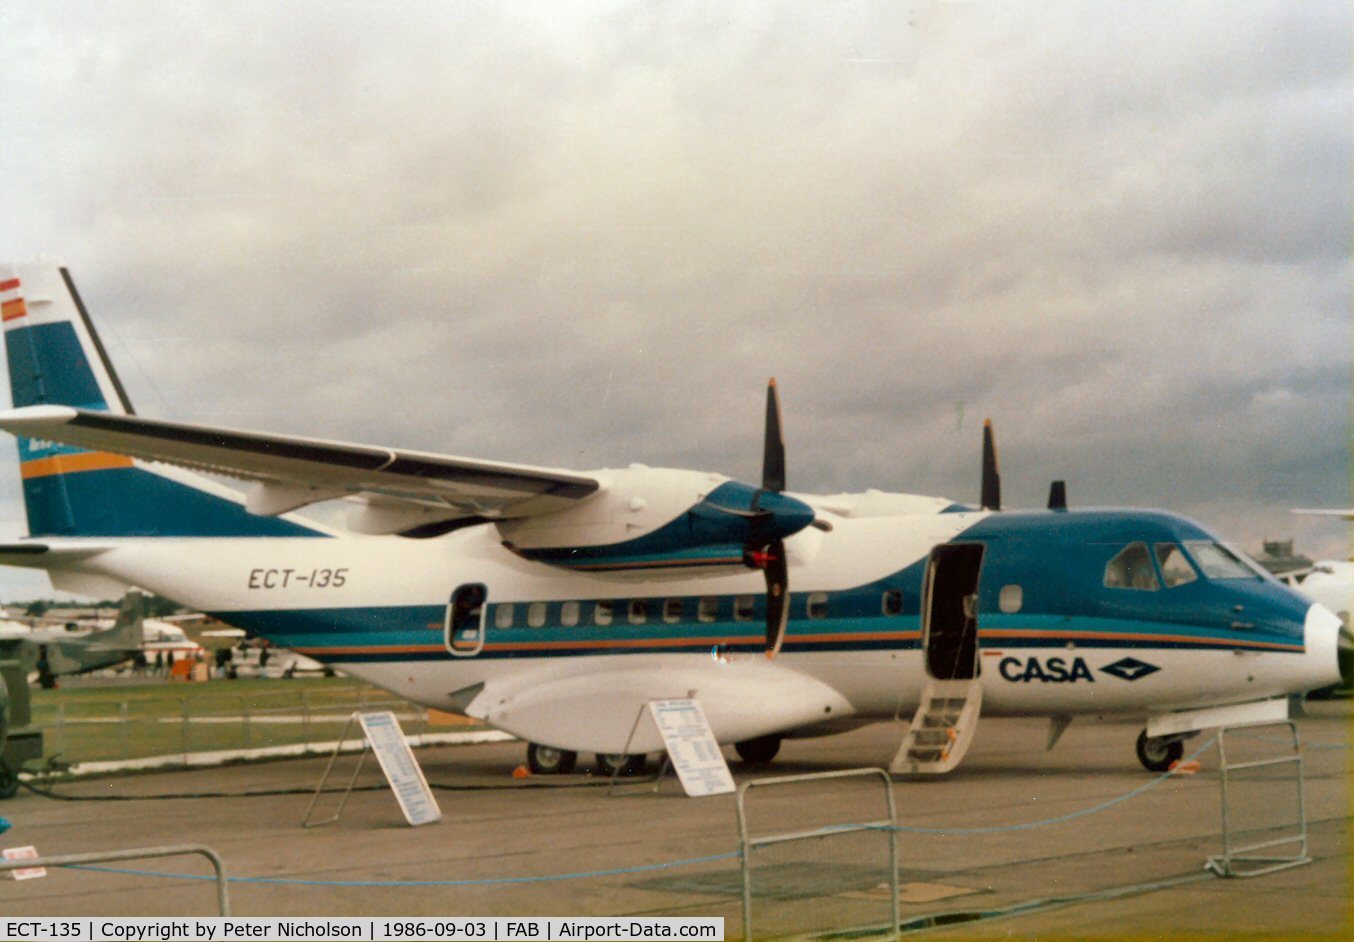 ECT-135, 1986 Airtech CN-235-1 C/N 001, CASA CN-235 on display at the 1986 Farnborough Airshow.